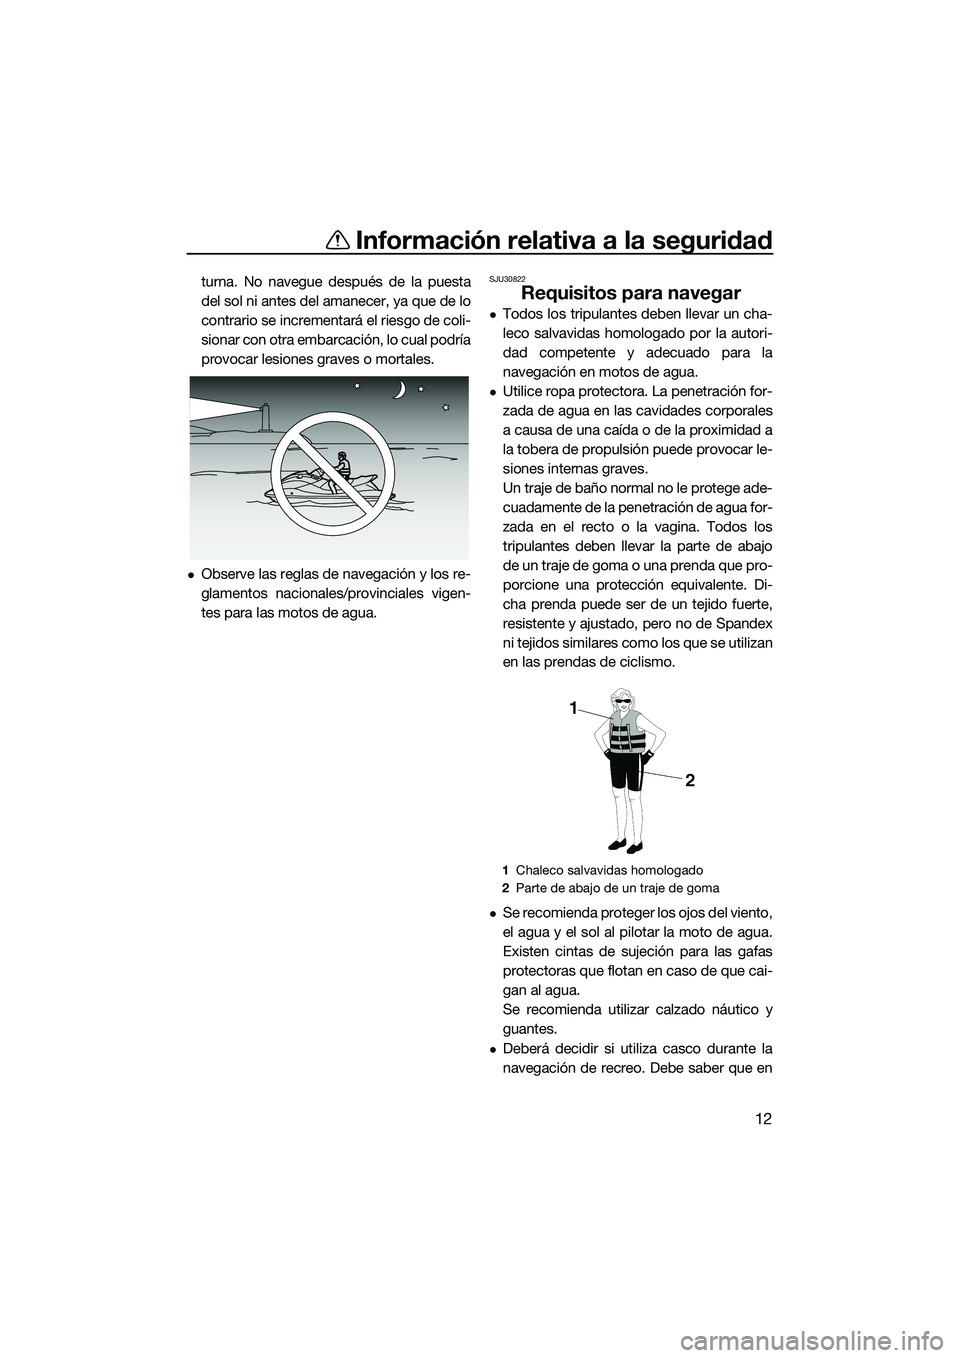 YAMAHA V1 2015  Manuale de Empleo (in Spanish) Información relativa a la seguridad
12
turna. No navegue después de la puesta
del sol ni antes del amanecer, ya que de lo
contrario se incrementará el riesgo de coli-
sionar con otra embarcación, 